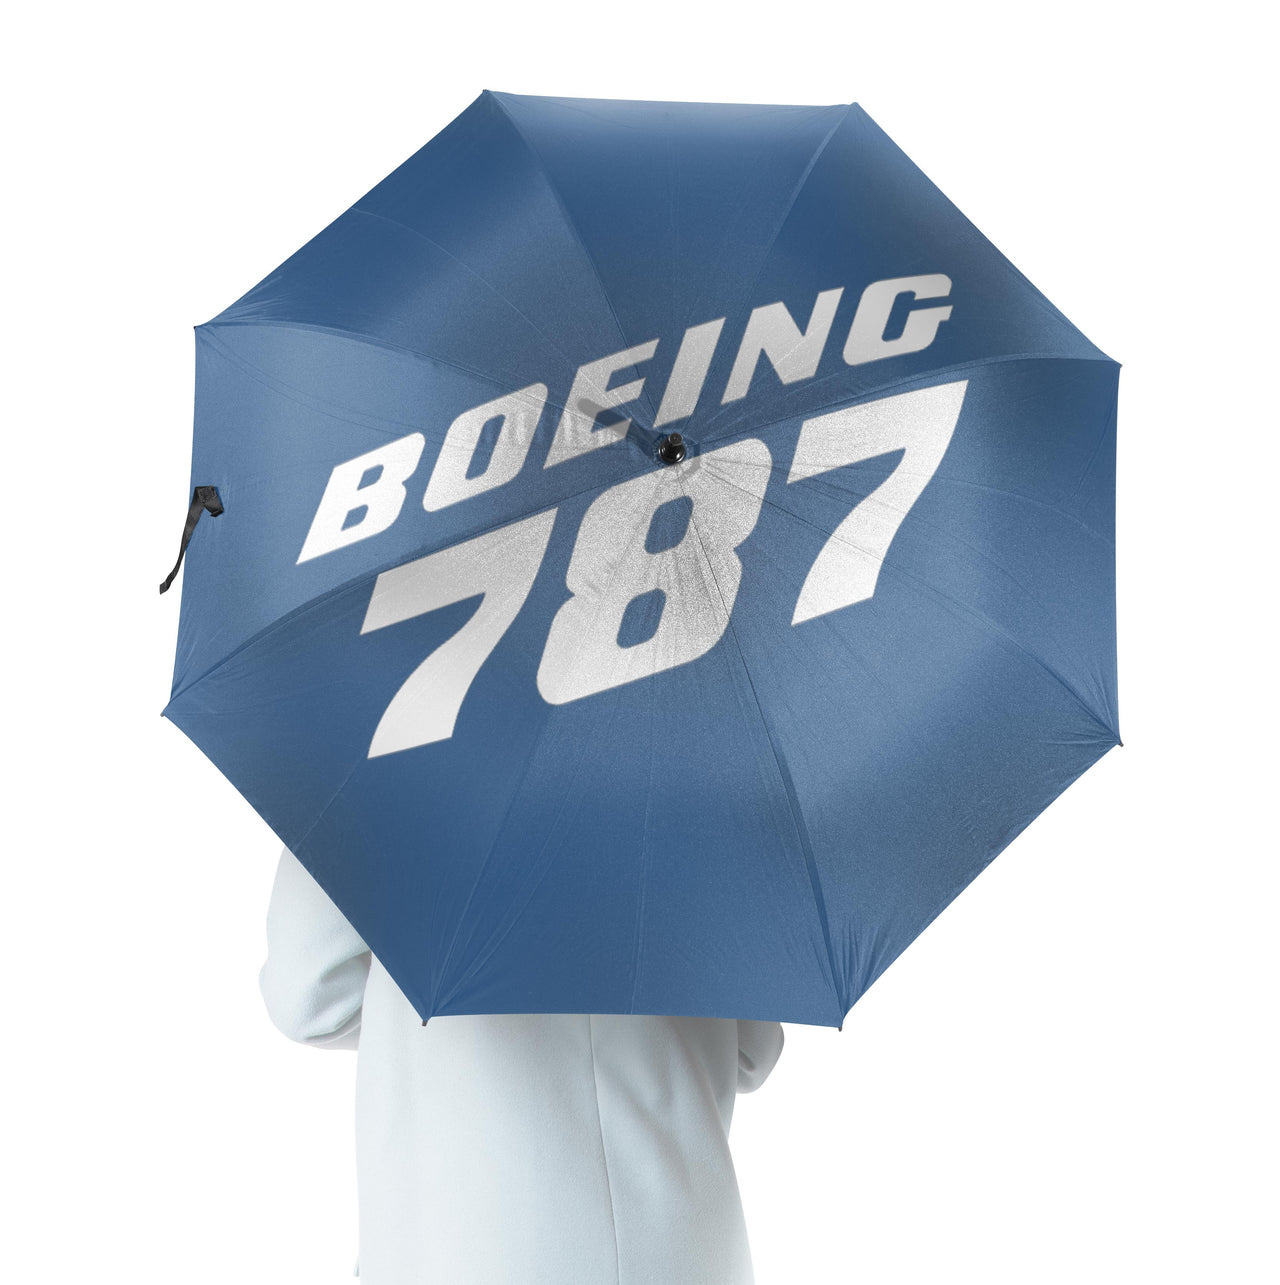 Boeing 787 & Text Designed Umbrella